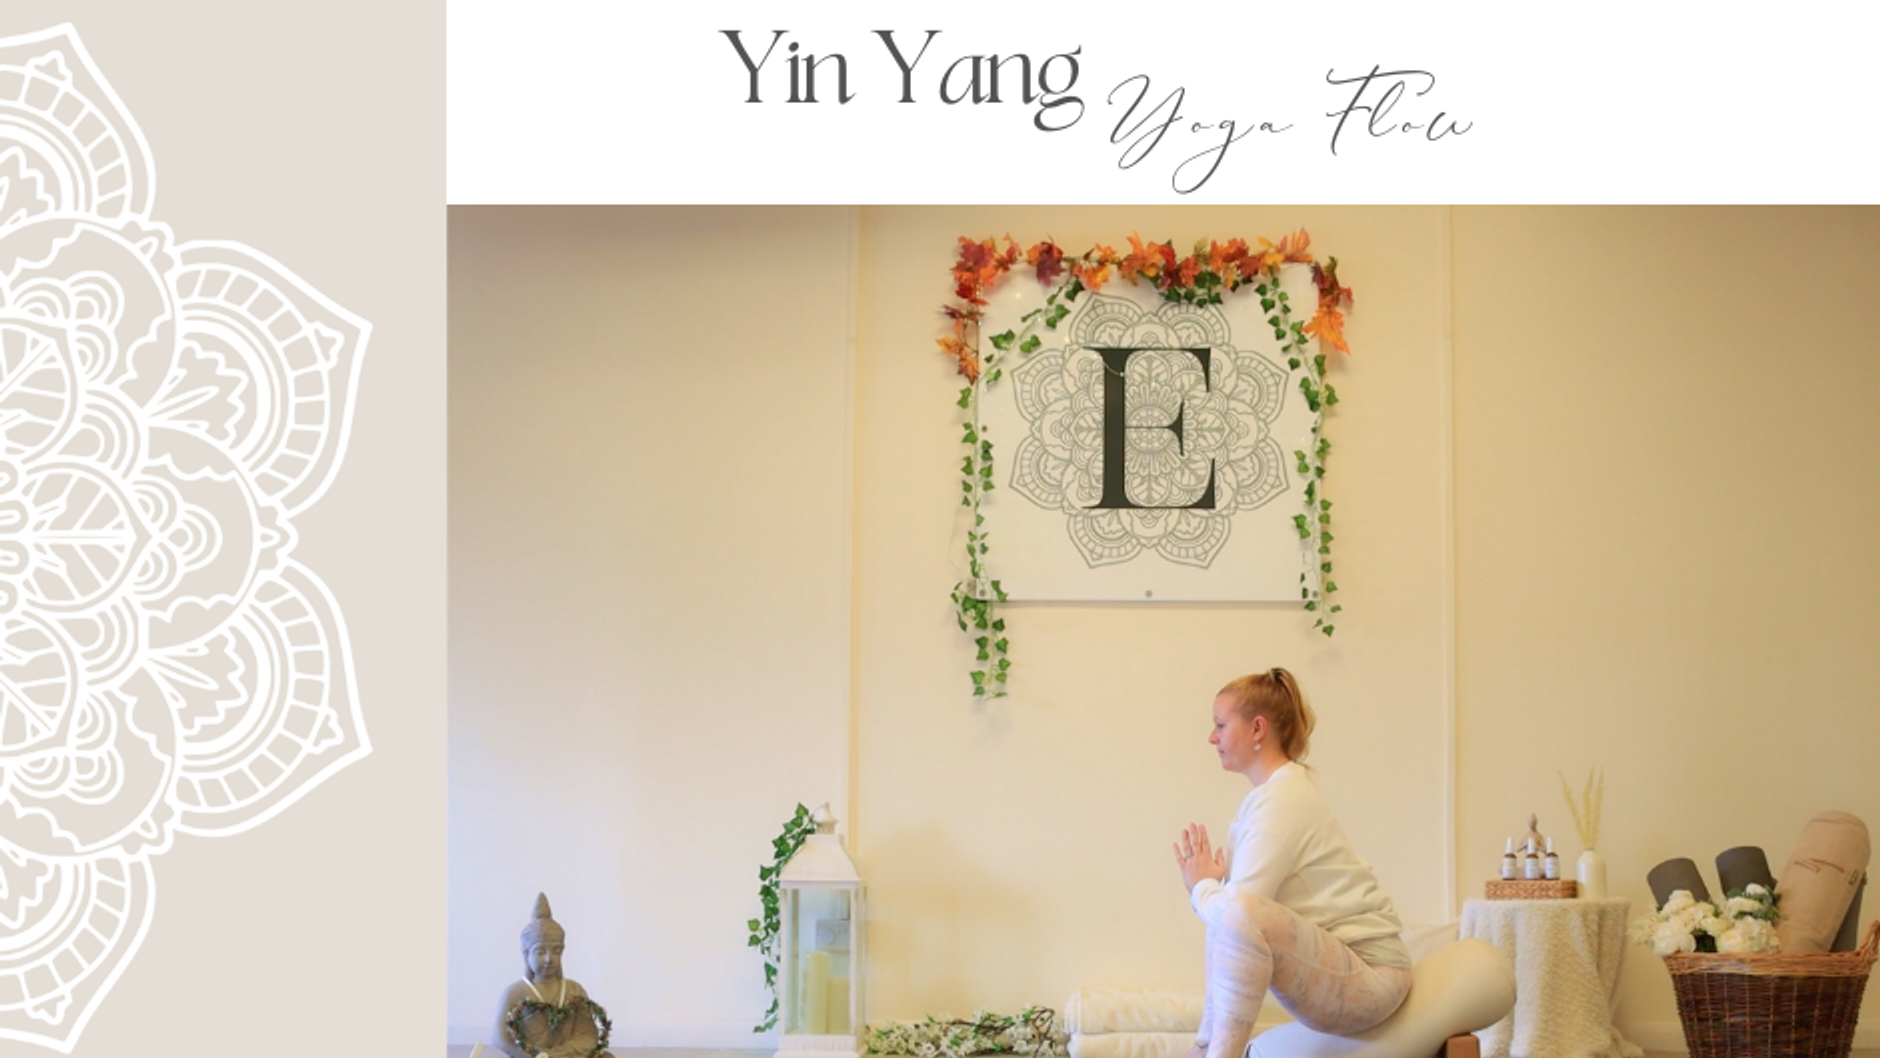 Yin Yang Yoga Flow